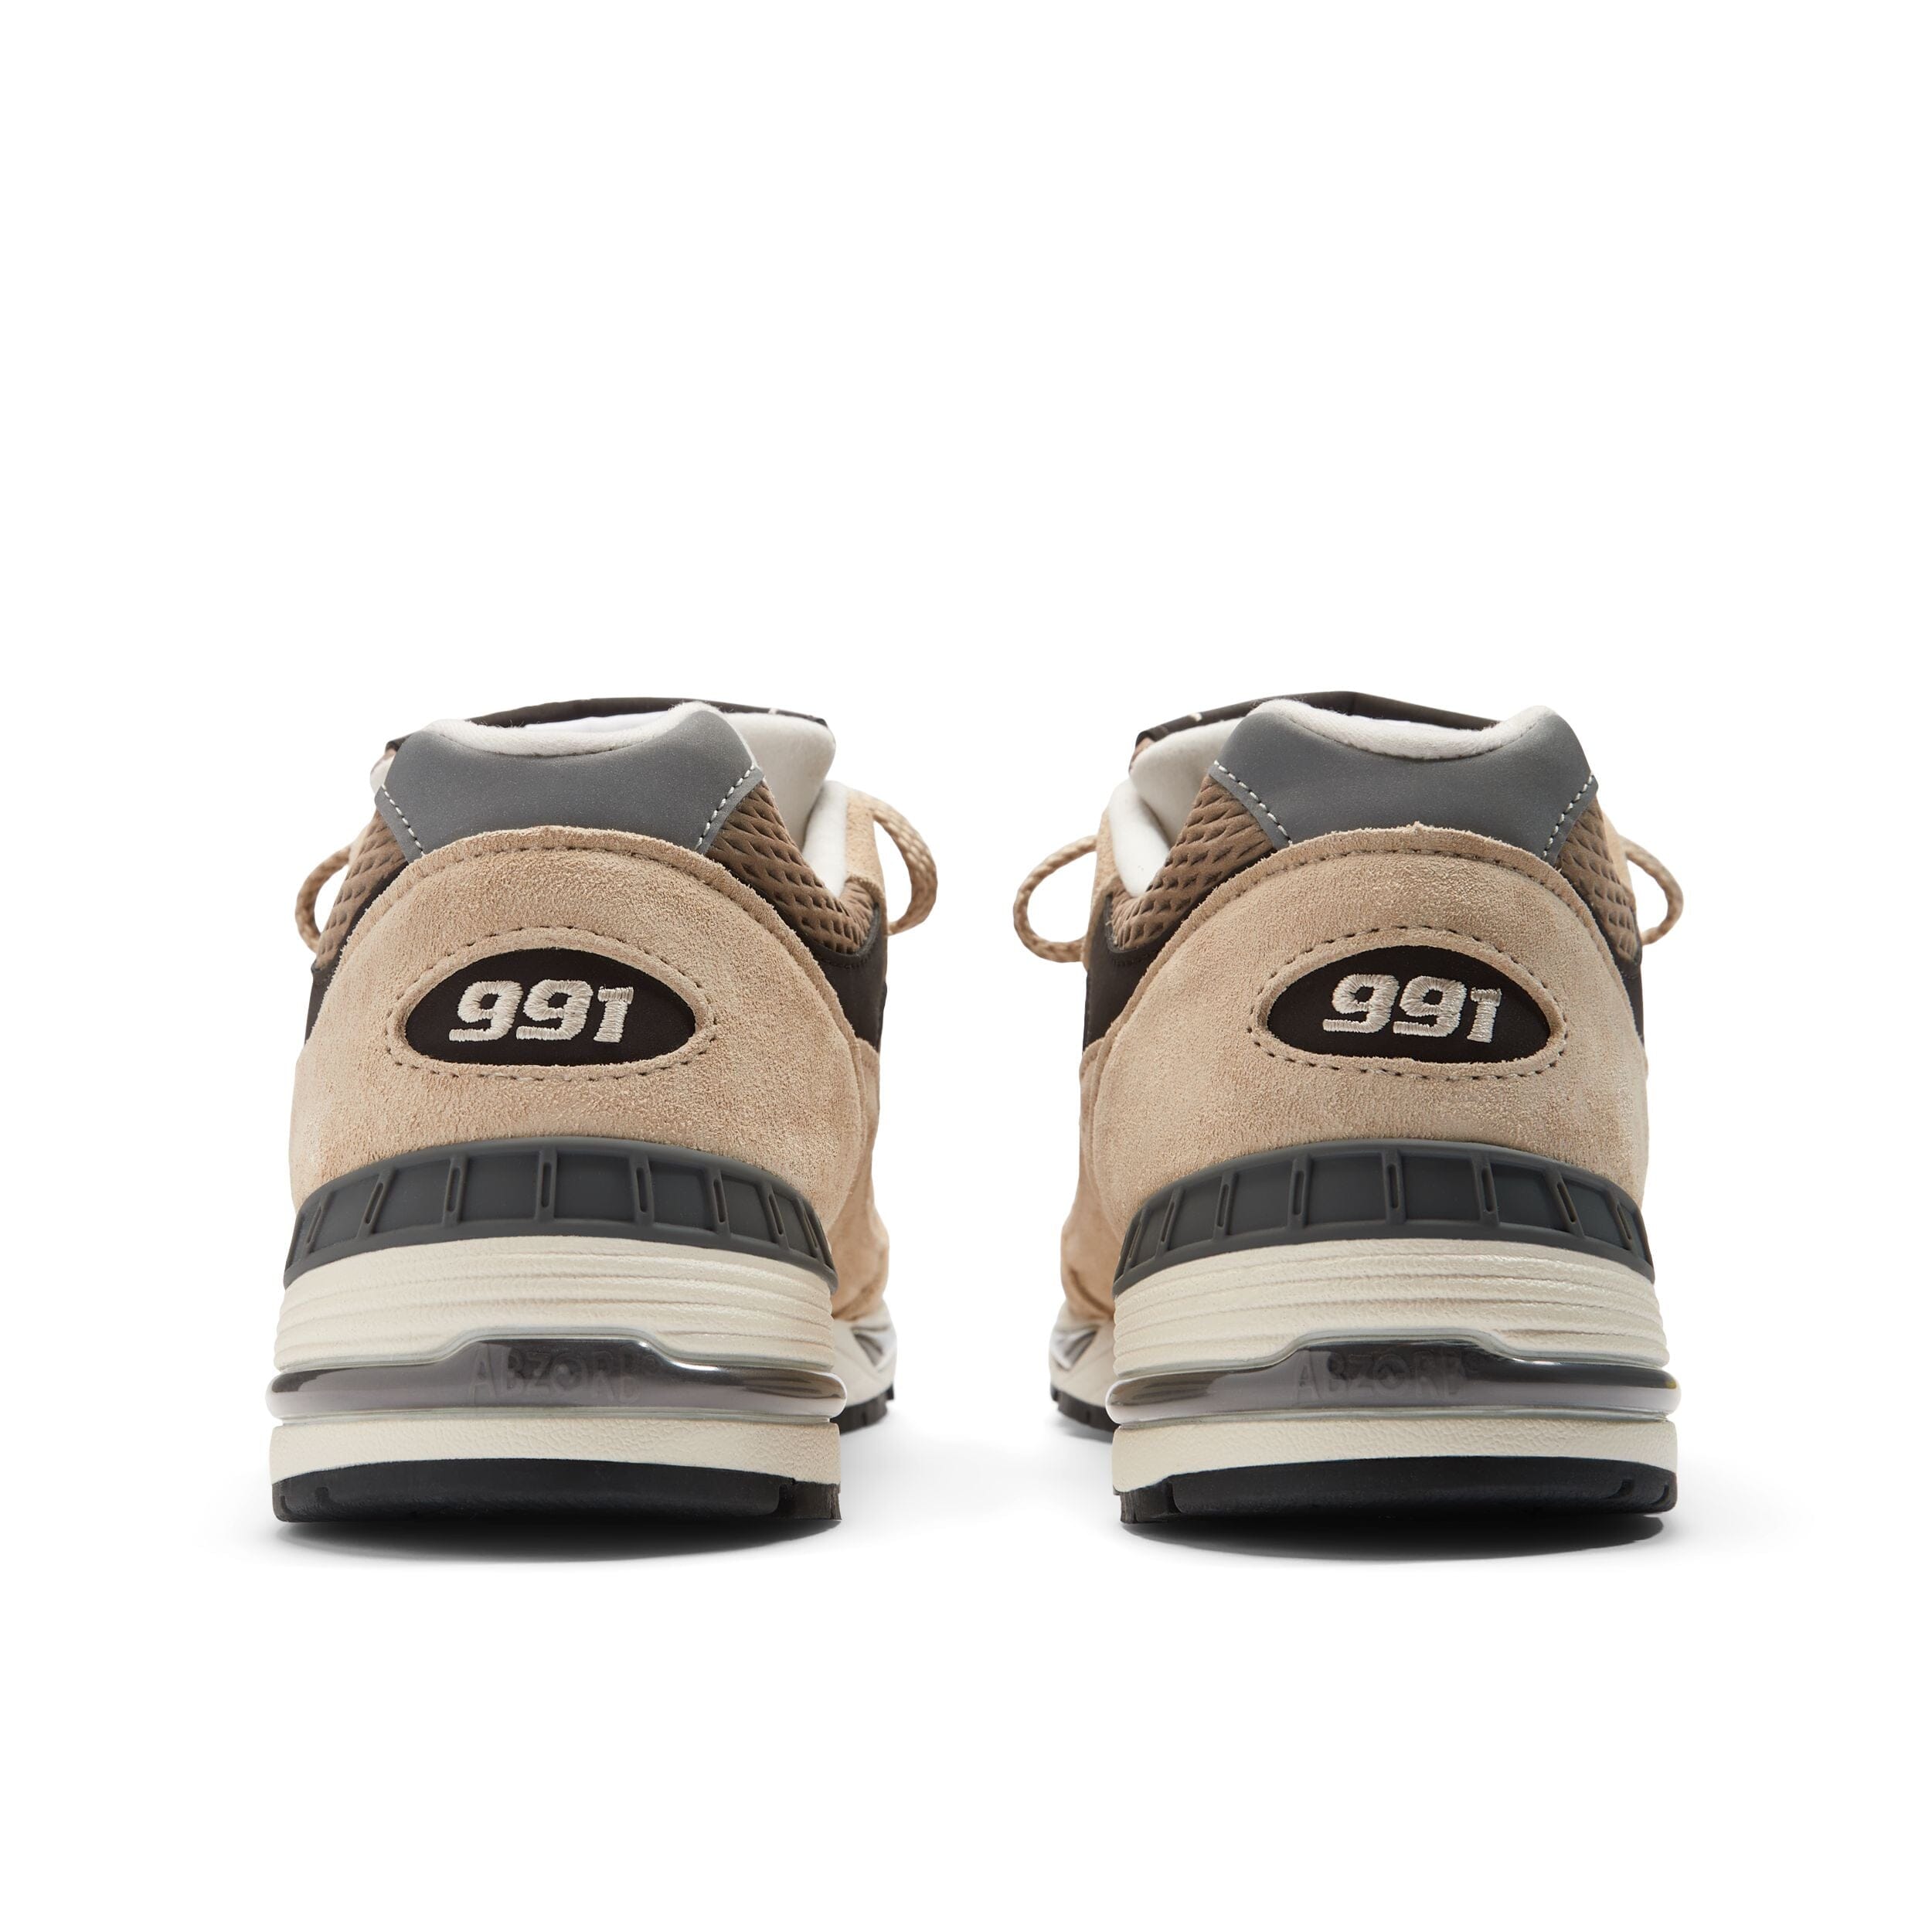 NEW BALANCE - Sneakers M991CGB Finale - Beige Scarpe Uomo NEW BALANCE - Collezione Uomo 